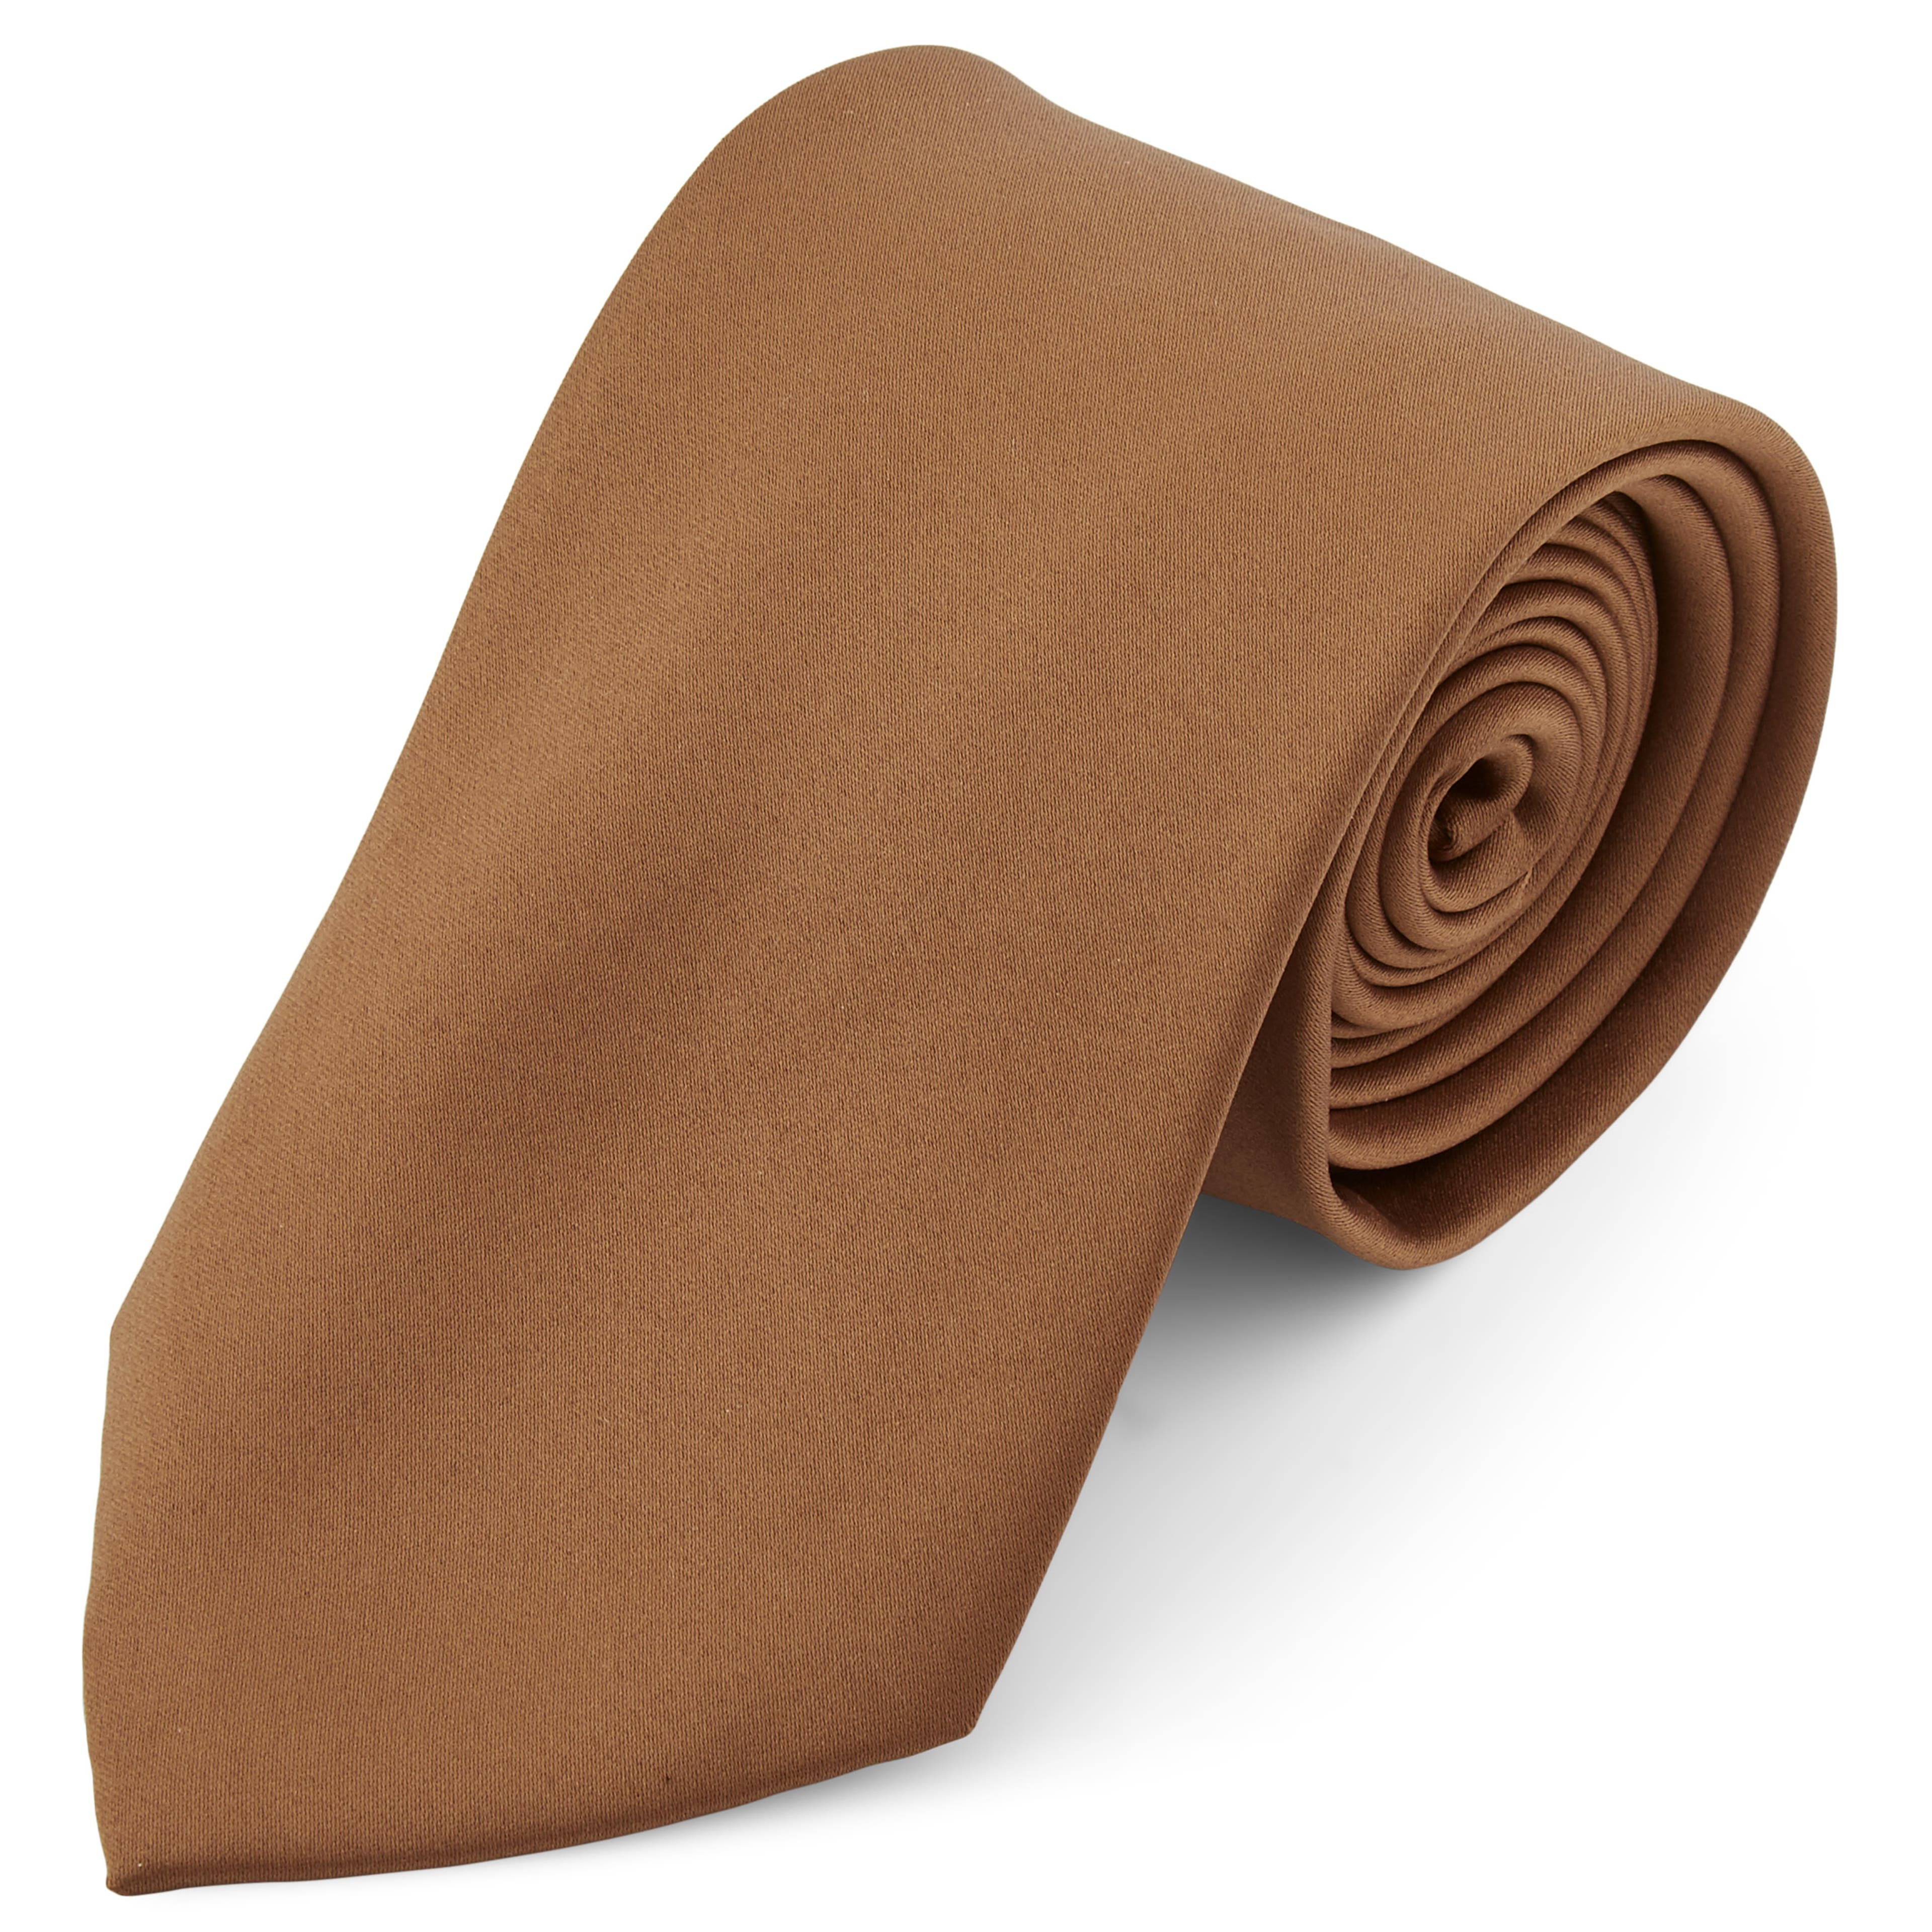 Cravate classique marron clair - 8 cm 